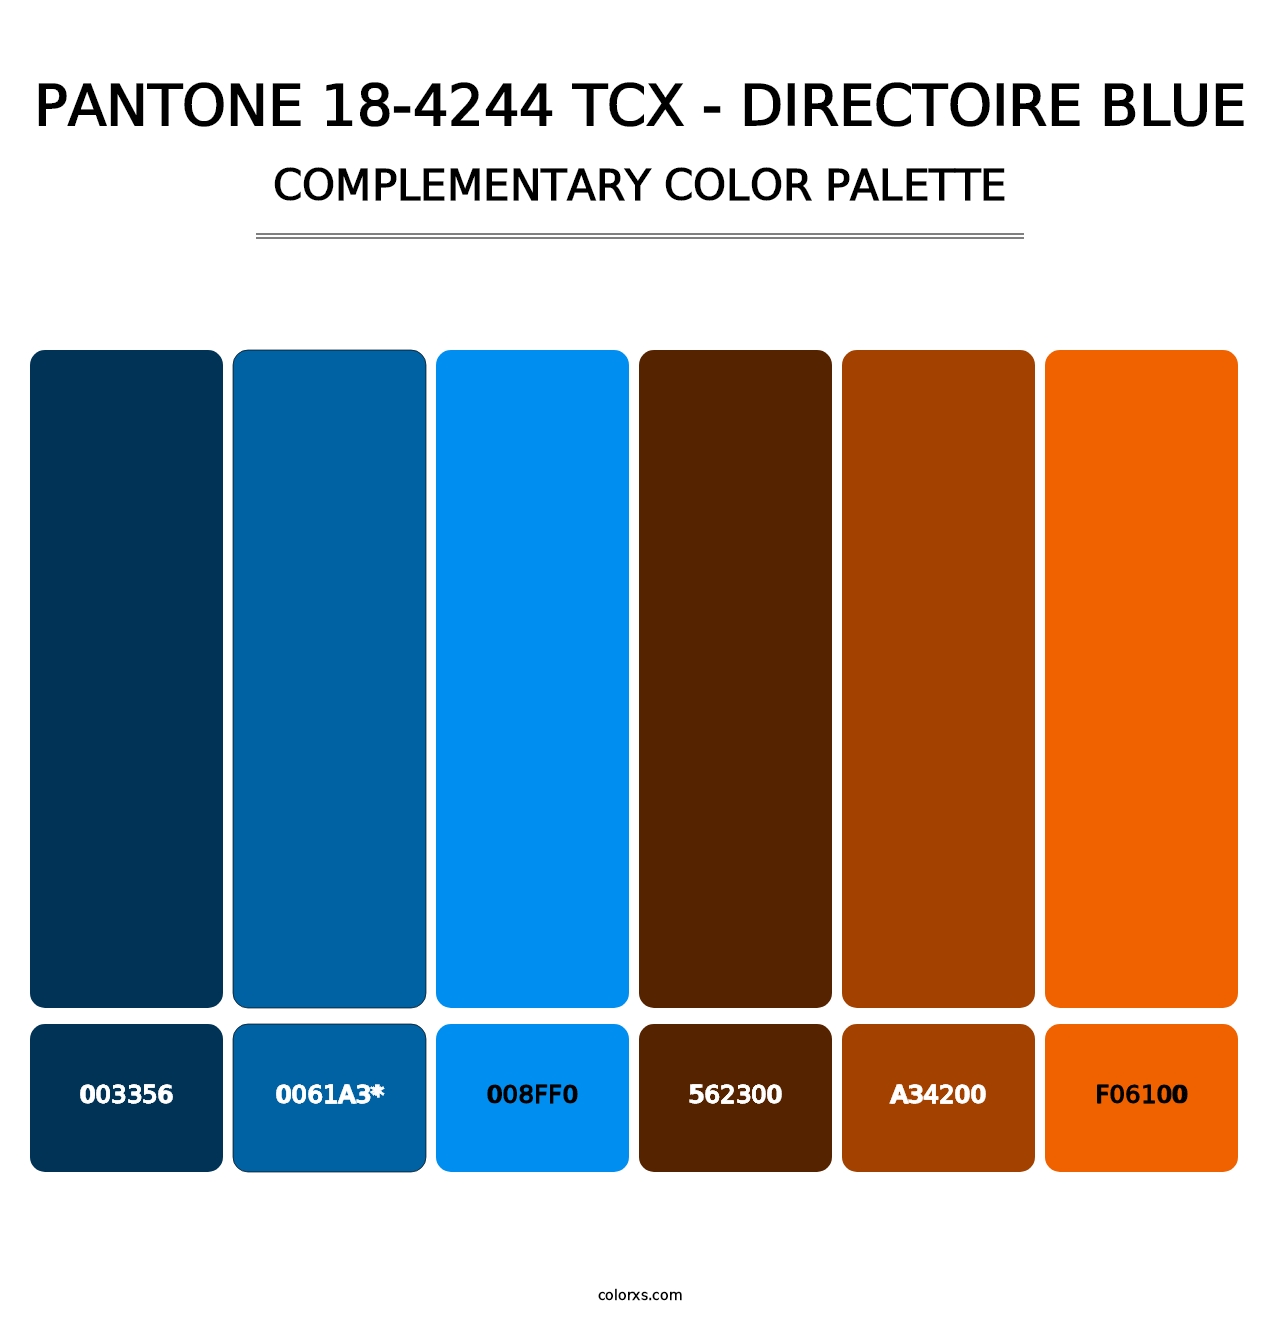 PANTONE 18-4244 TCX - Directoire Blue - Complementary Color Palette